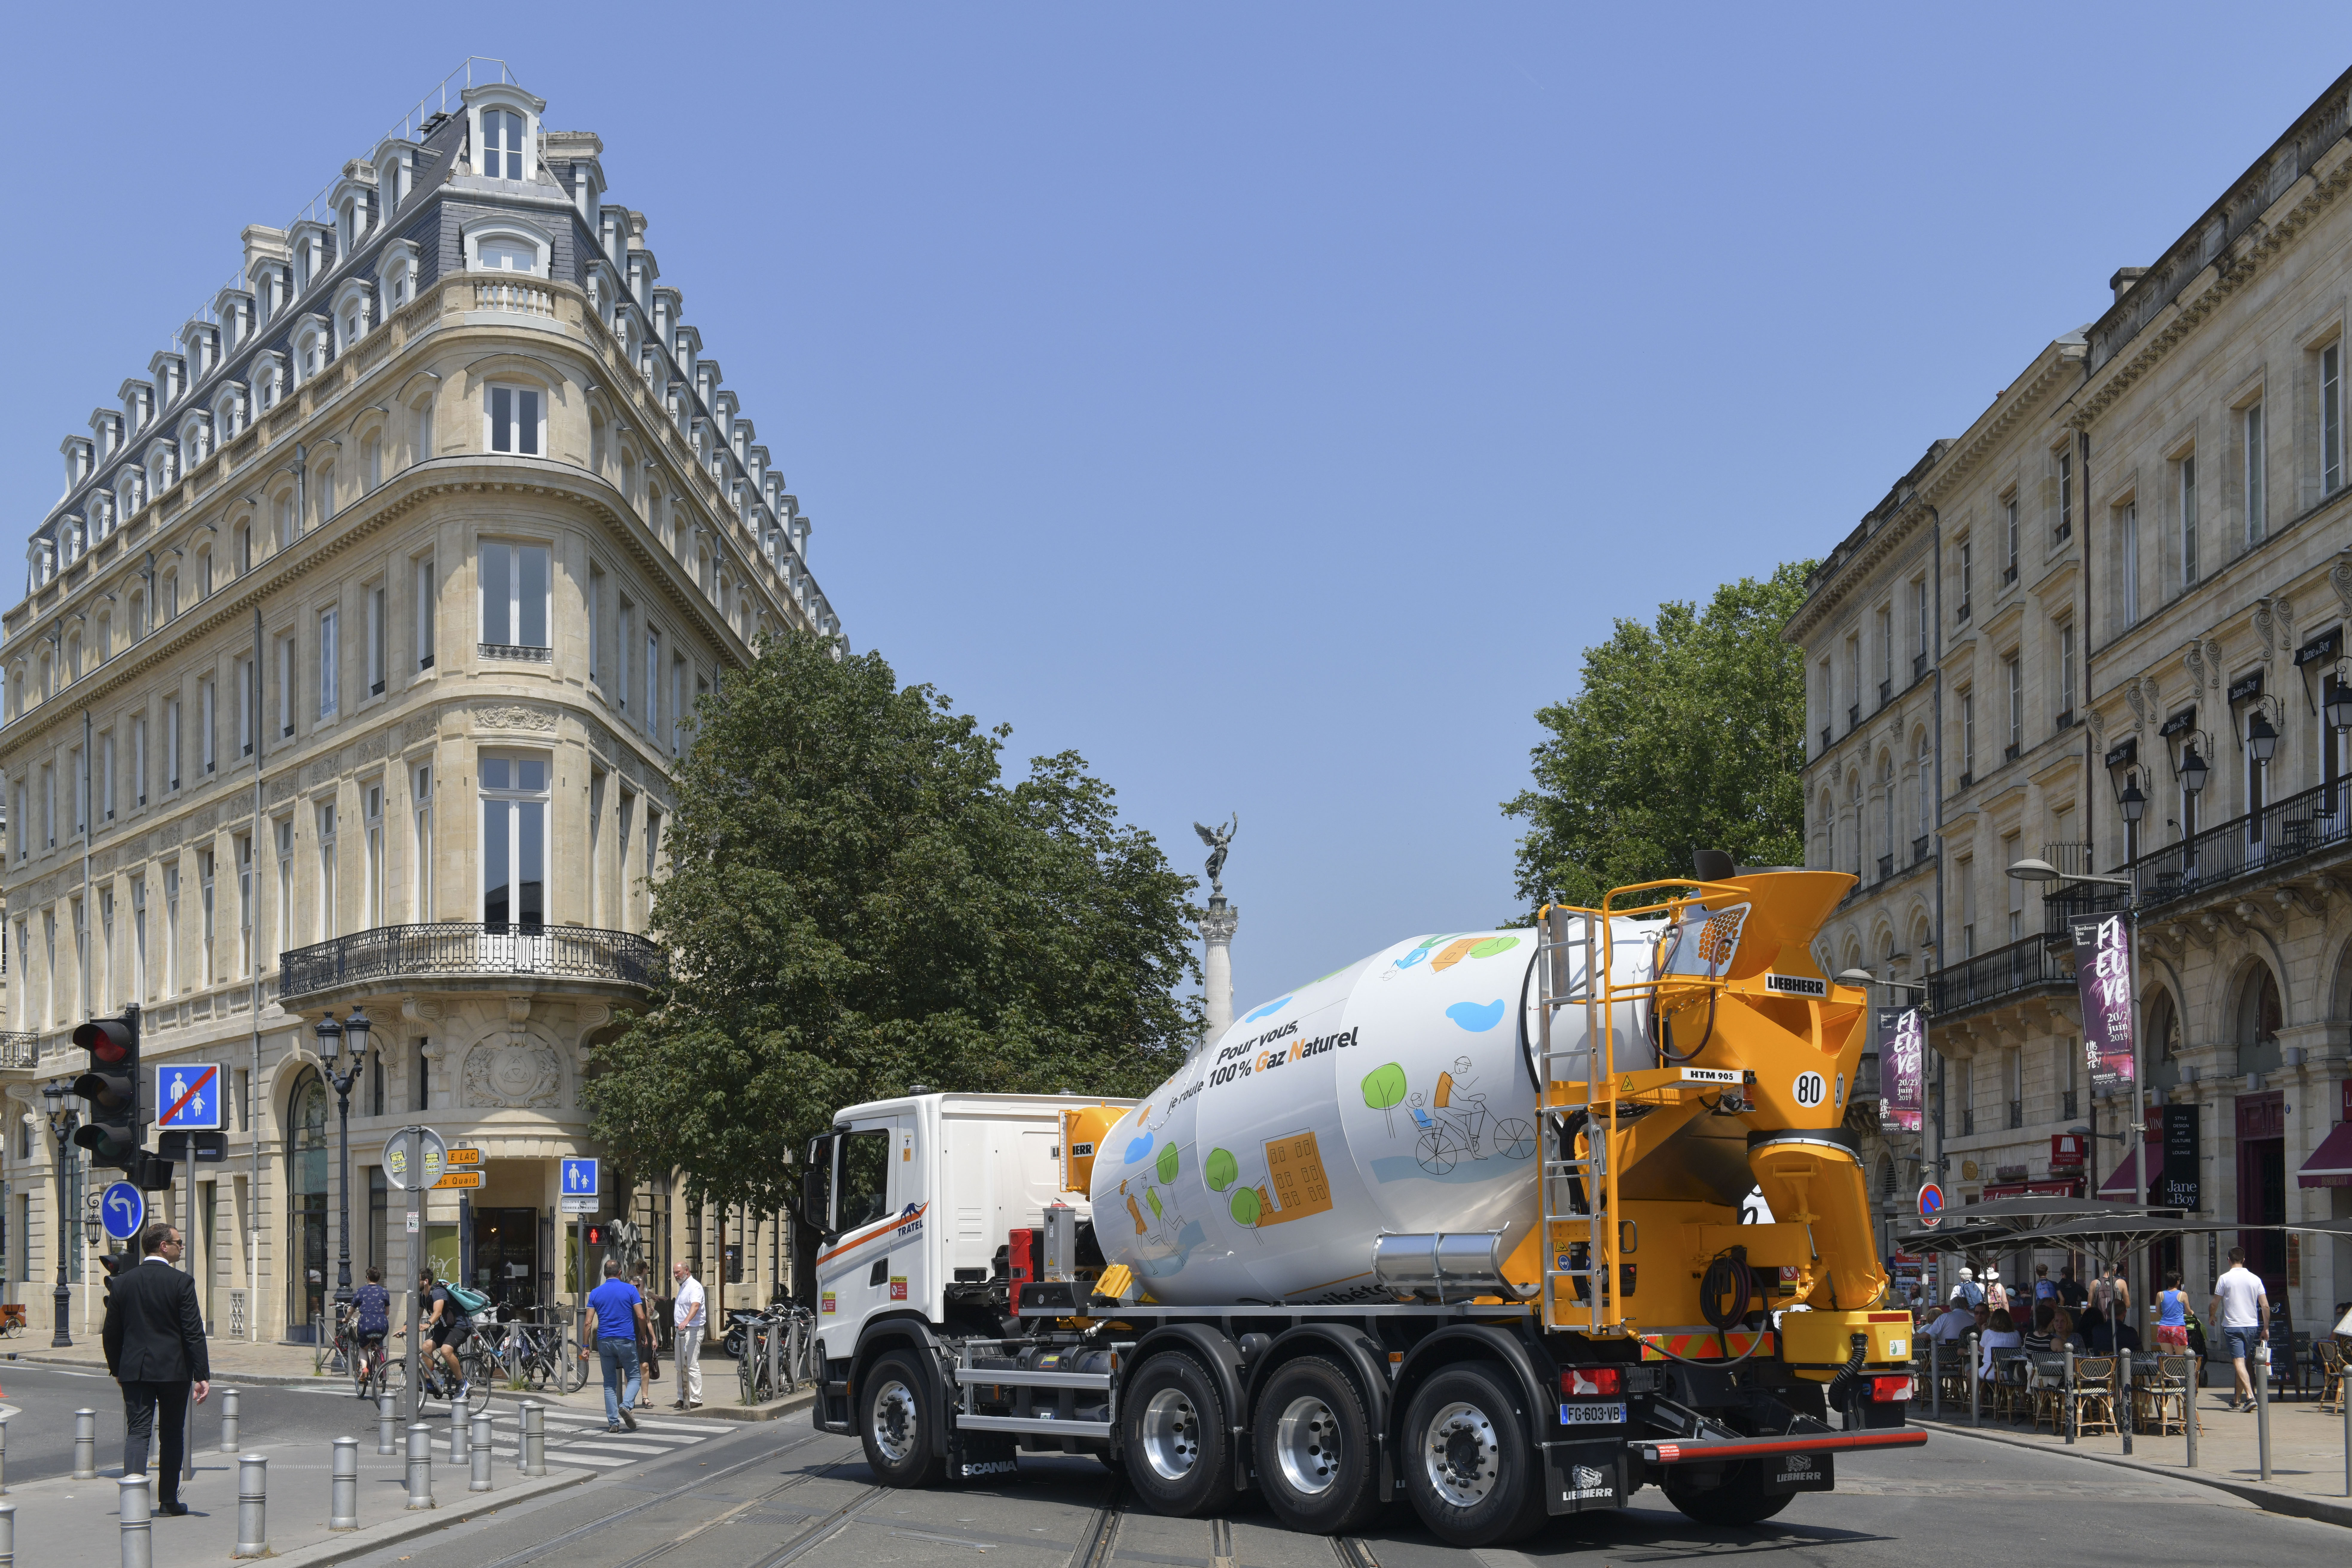 Un camion-toupie révolutionne le transport du ciment - GreenUnivers